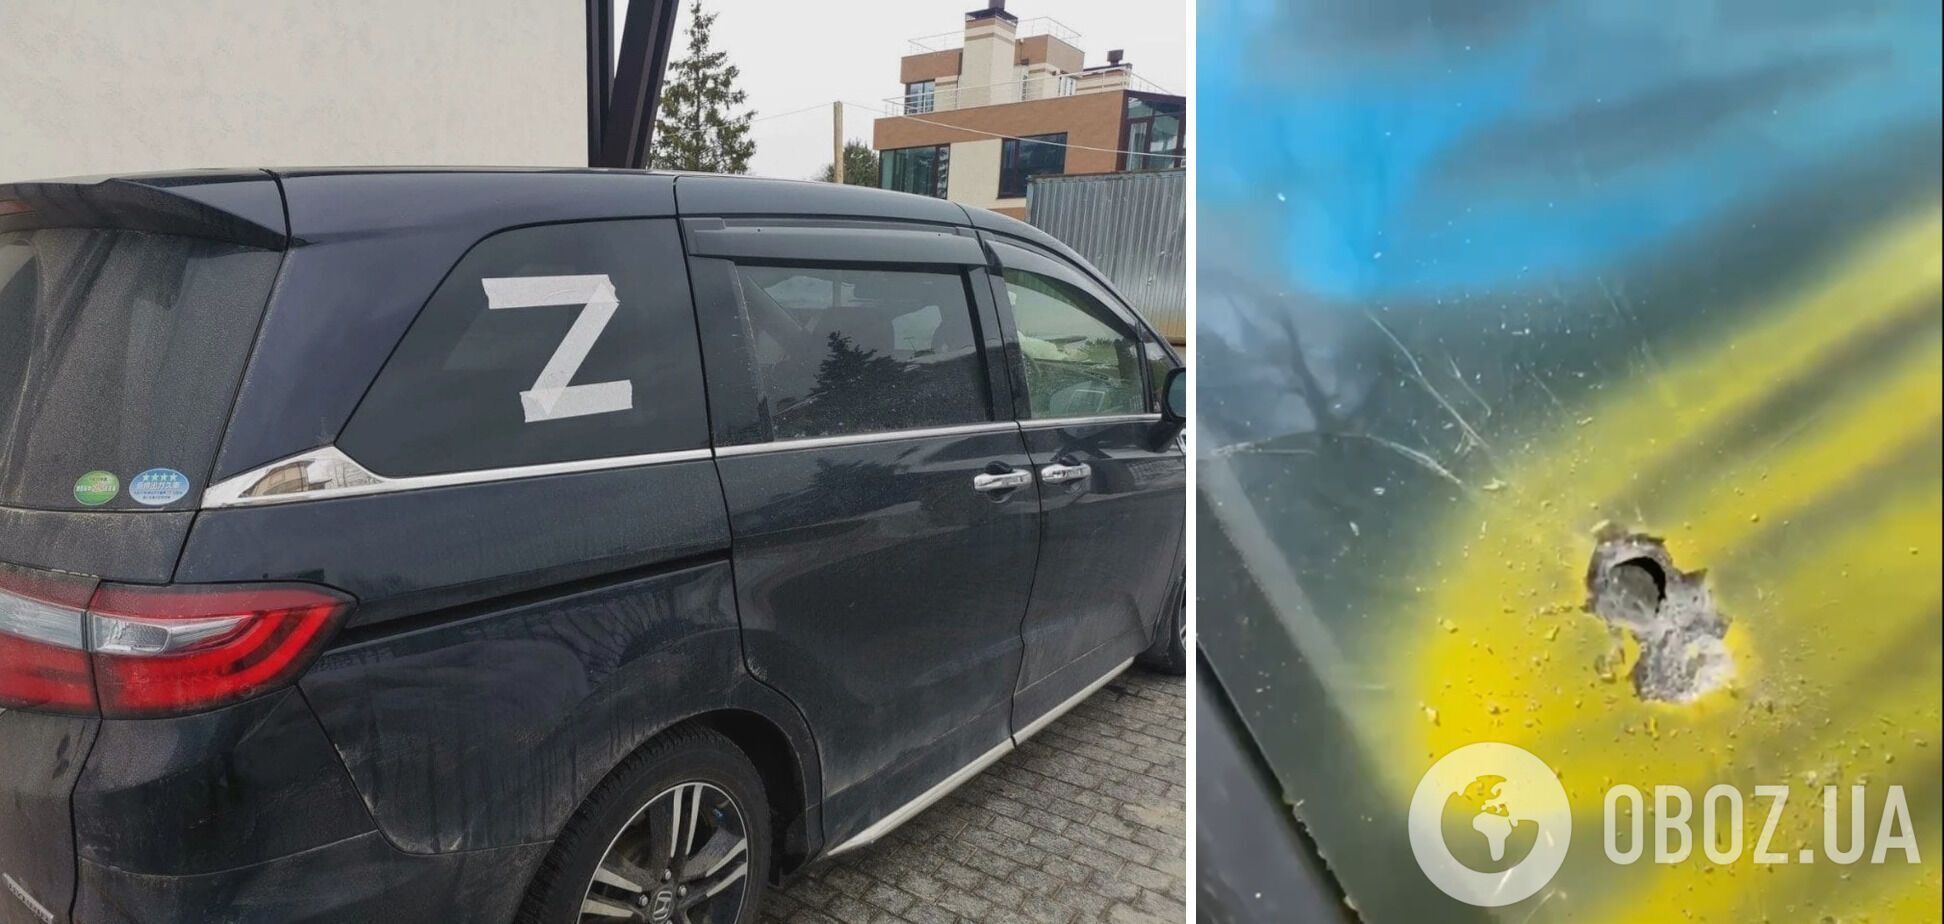 В Крыму повредили автомобиль с 'Z'